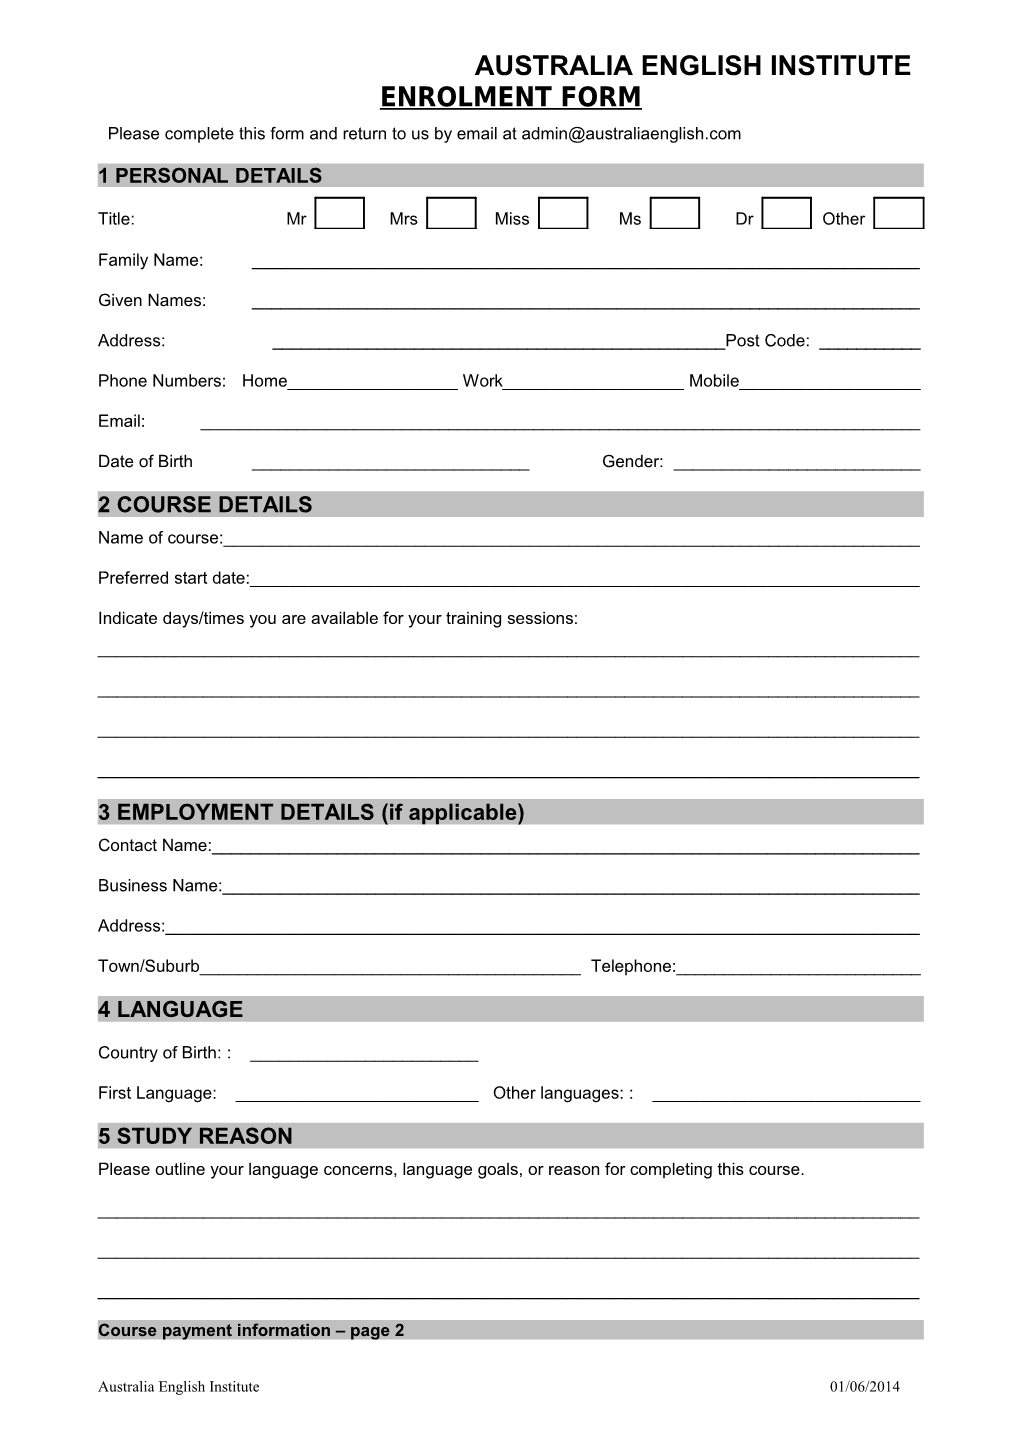 Private RTO Enrolment Form (Word)